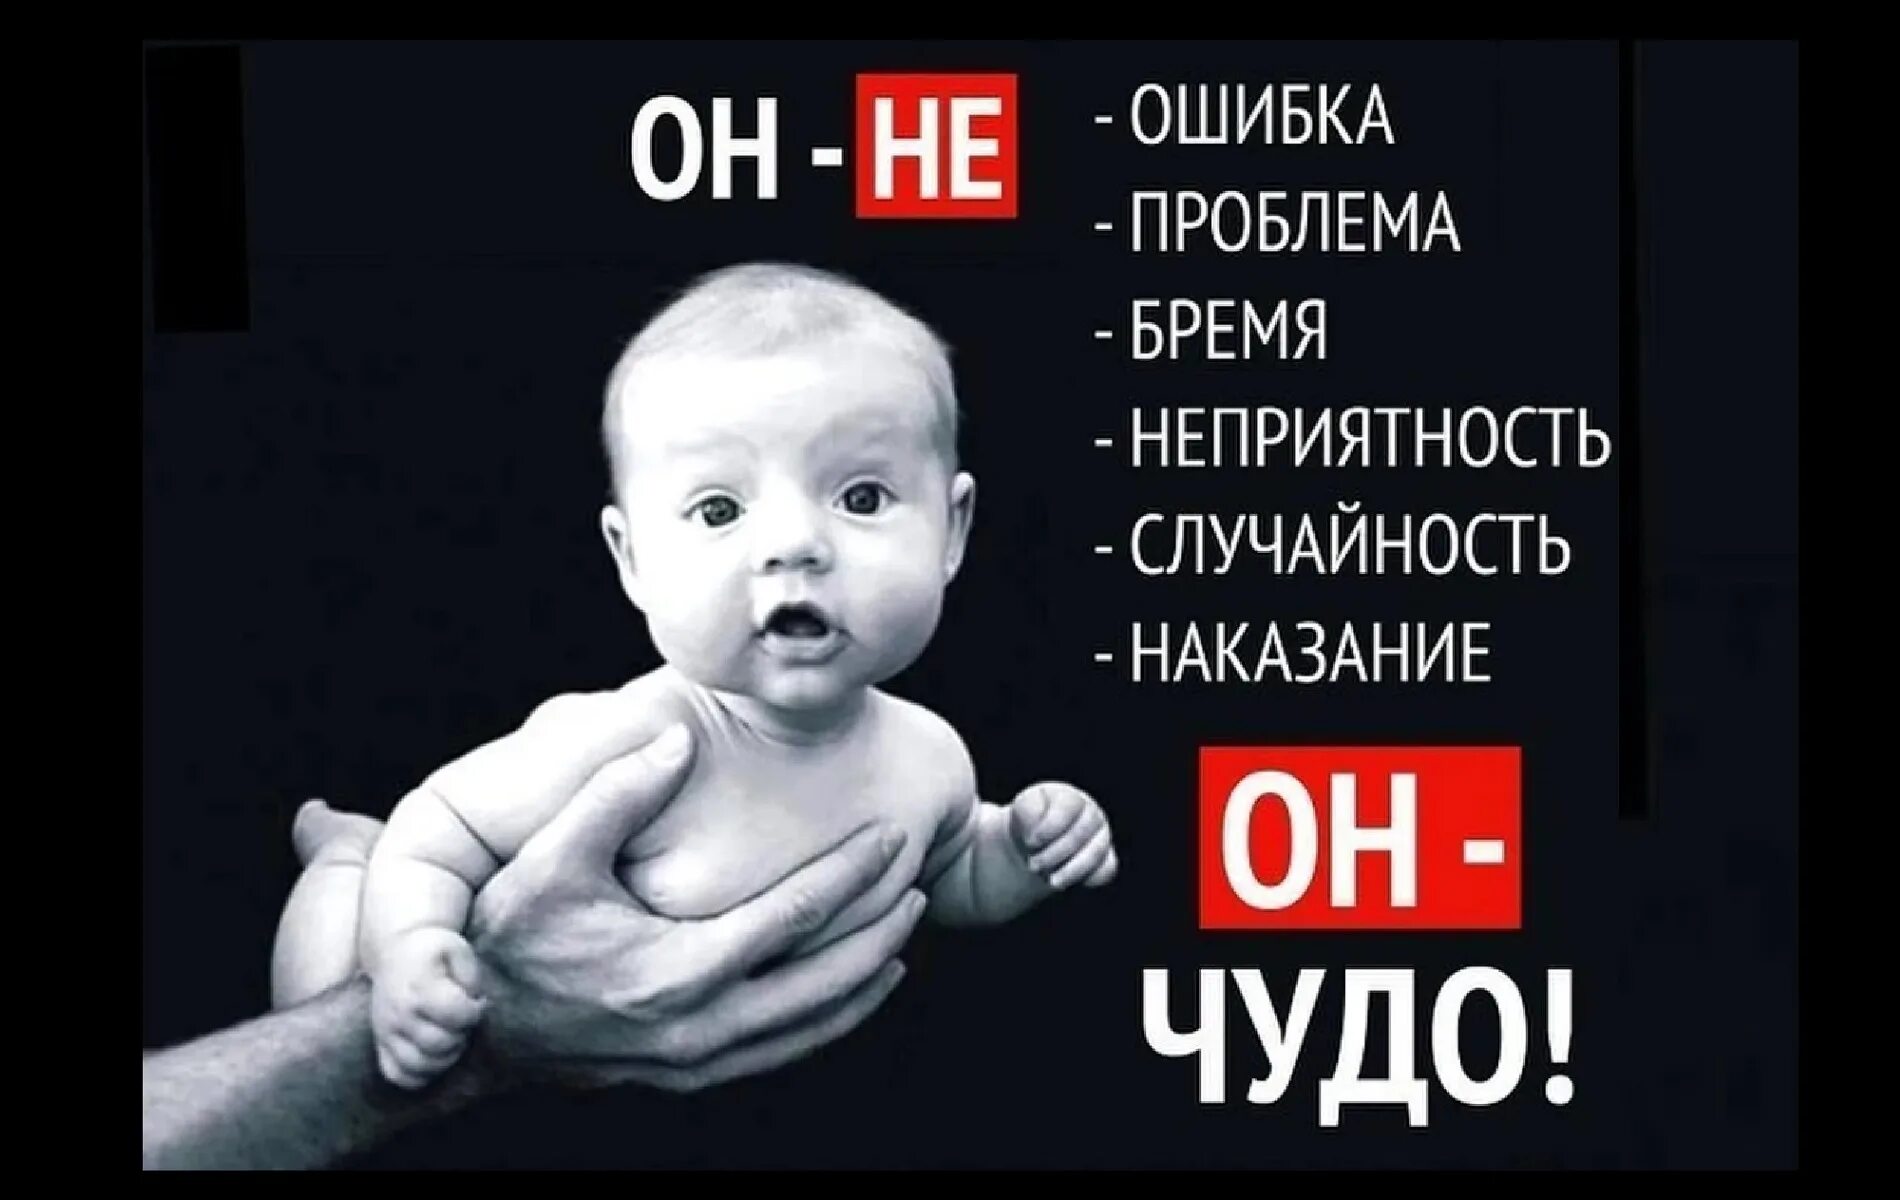 Реклама про маму. Социальный плакат против абортов. Плакат я против абортов. Социальная реклама против абортов.